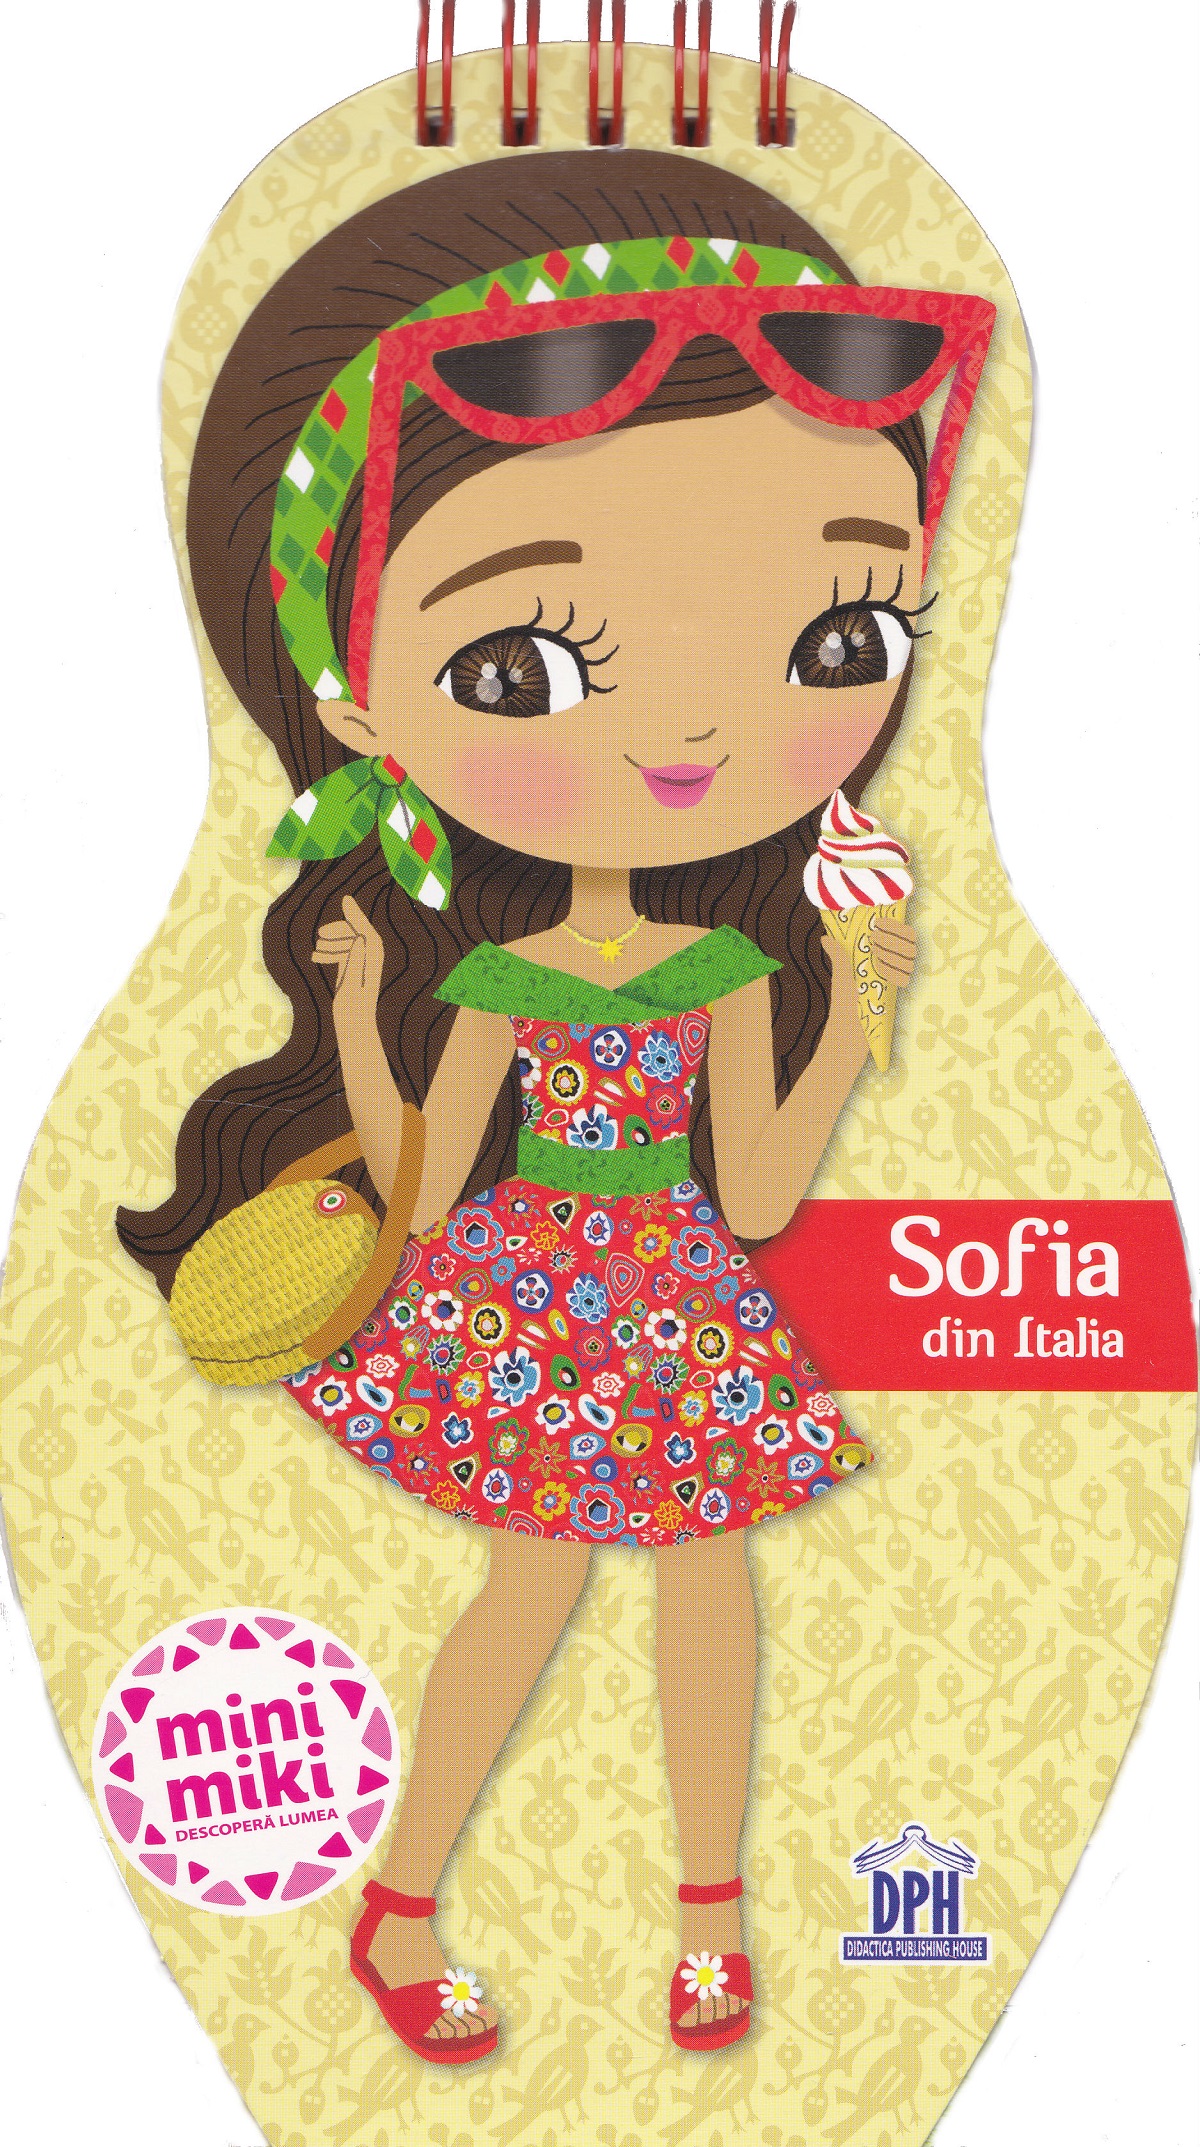 Sofia din Italia - Minimiki